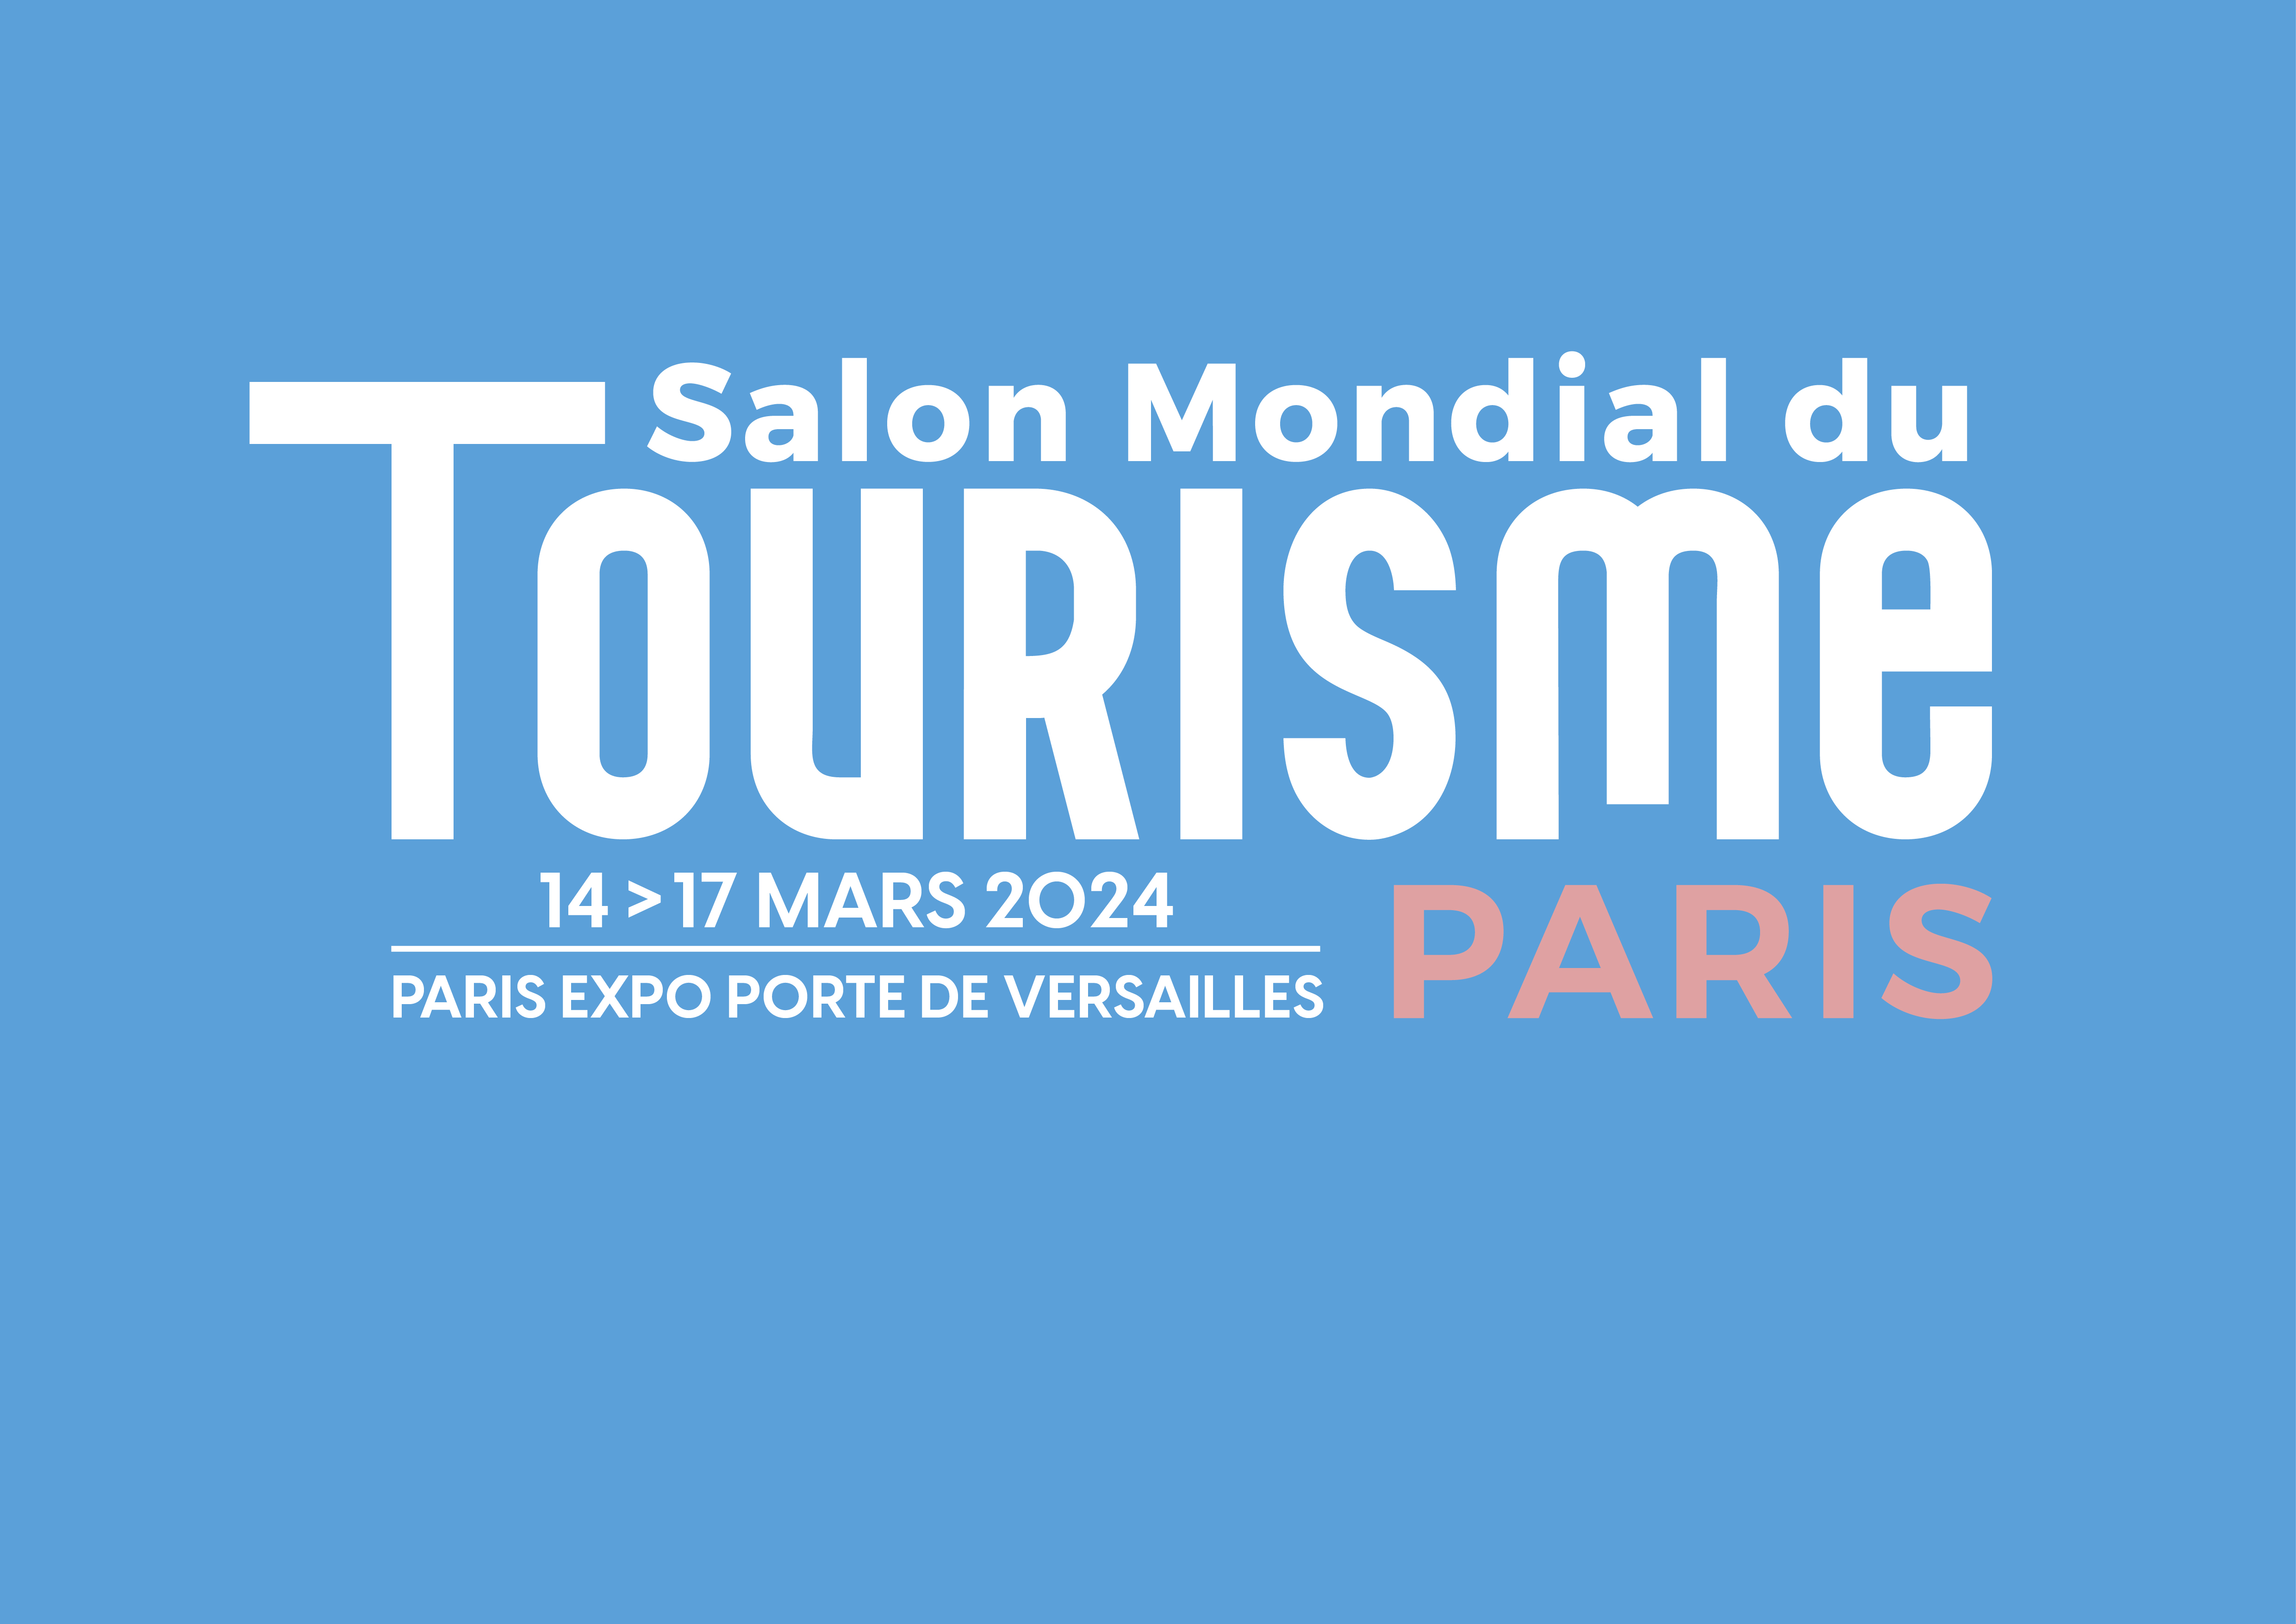 Salon Mondial du Tourisme Paris 